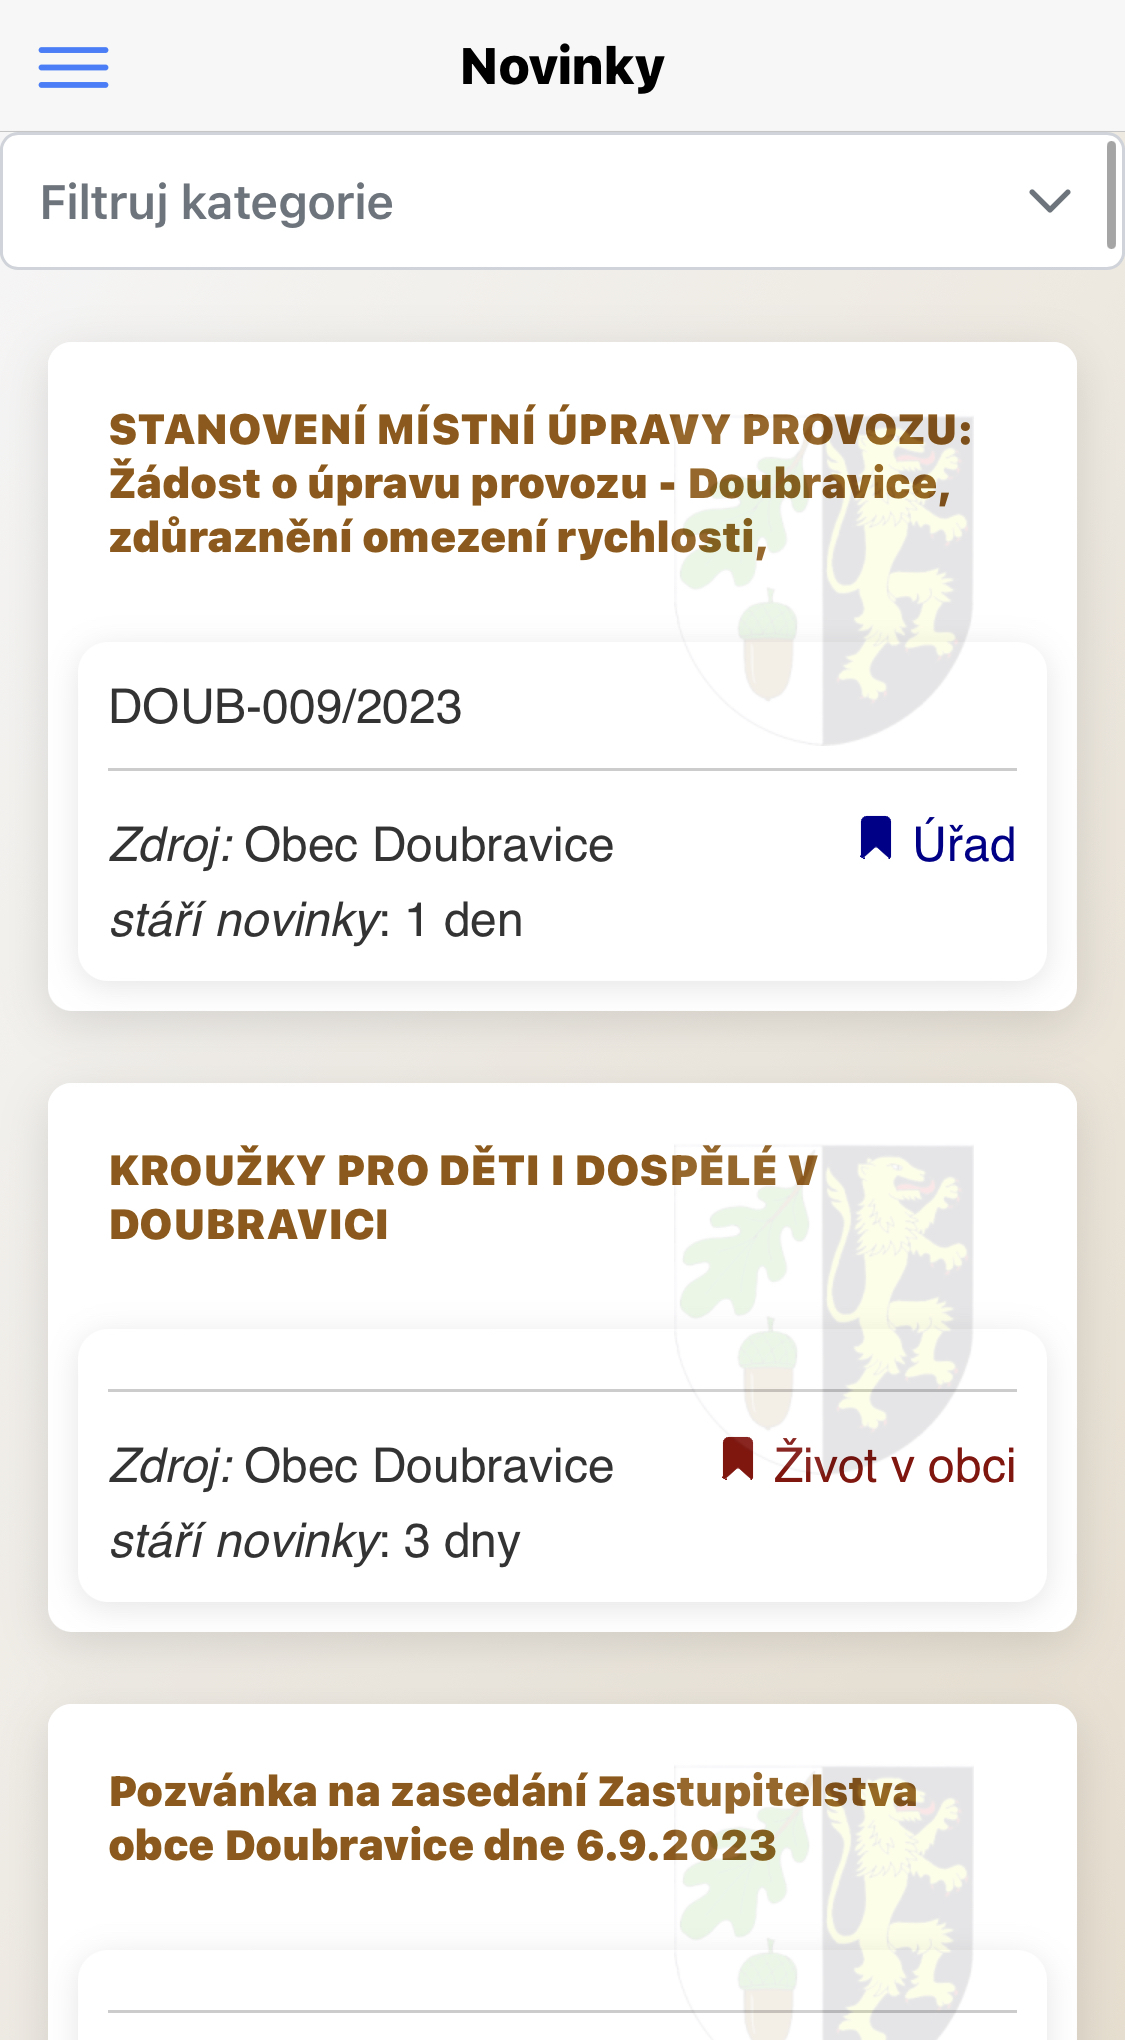 Mobilní aplikace ke sledování novinek na webu Doubravice